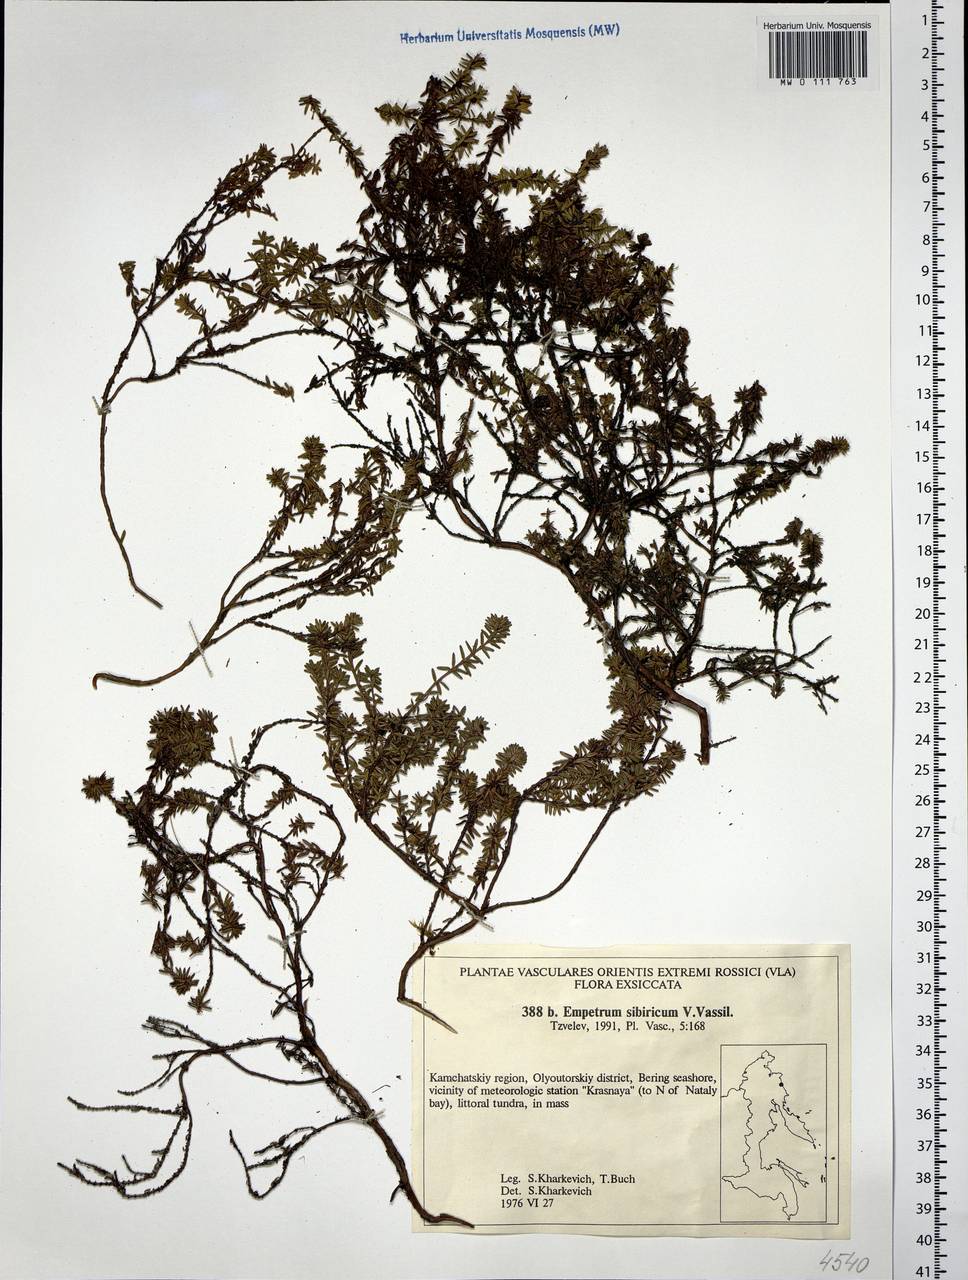 Empetrum nigrum subsp. stenopetalum (V. N. Vassil.) Nedol., Сибирь, Чукотка и Камчатка (S7) (Россия)